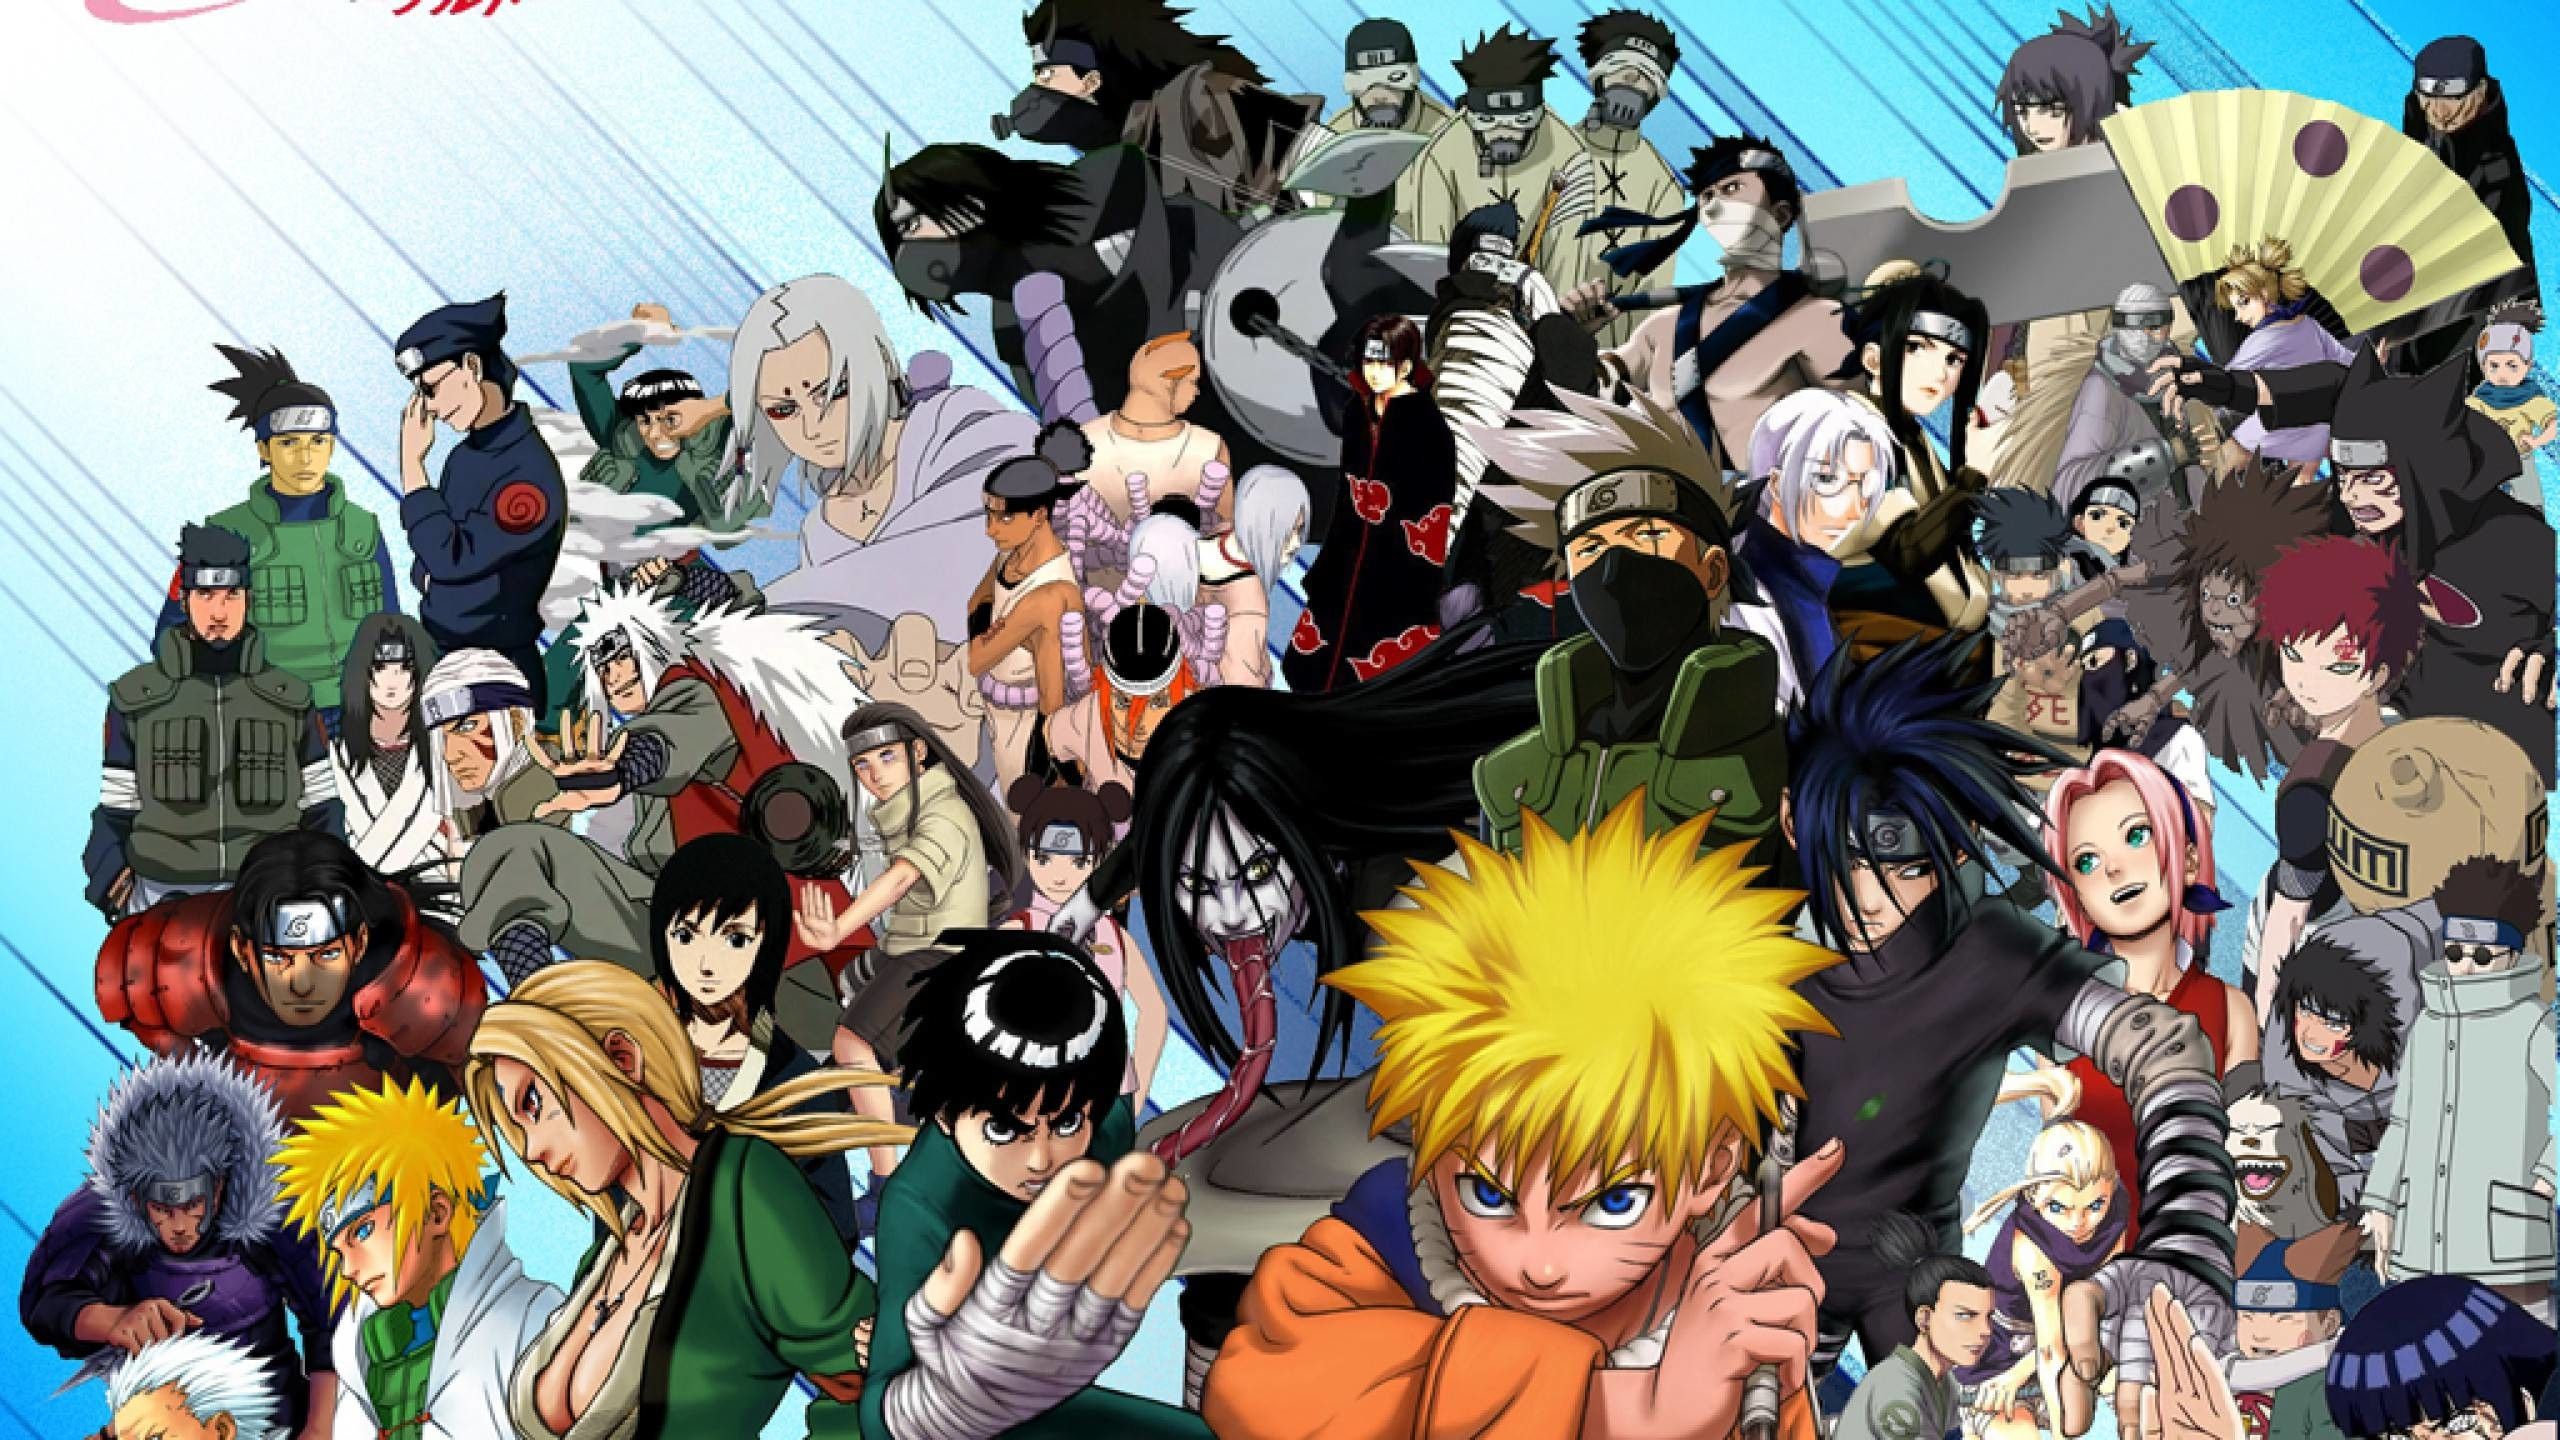 Res: 2560x Naruto Wallpaper 11 X 1440. Anime, Naruto wallpaper, Character wallpaper